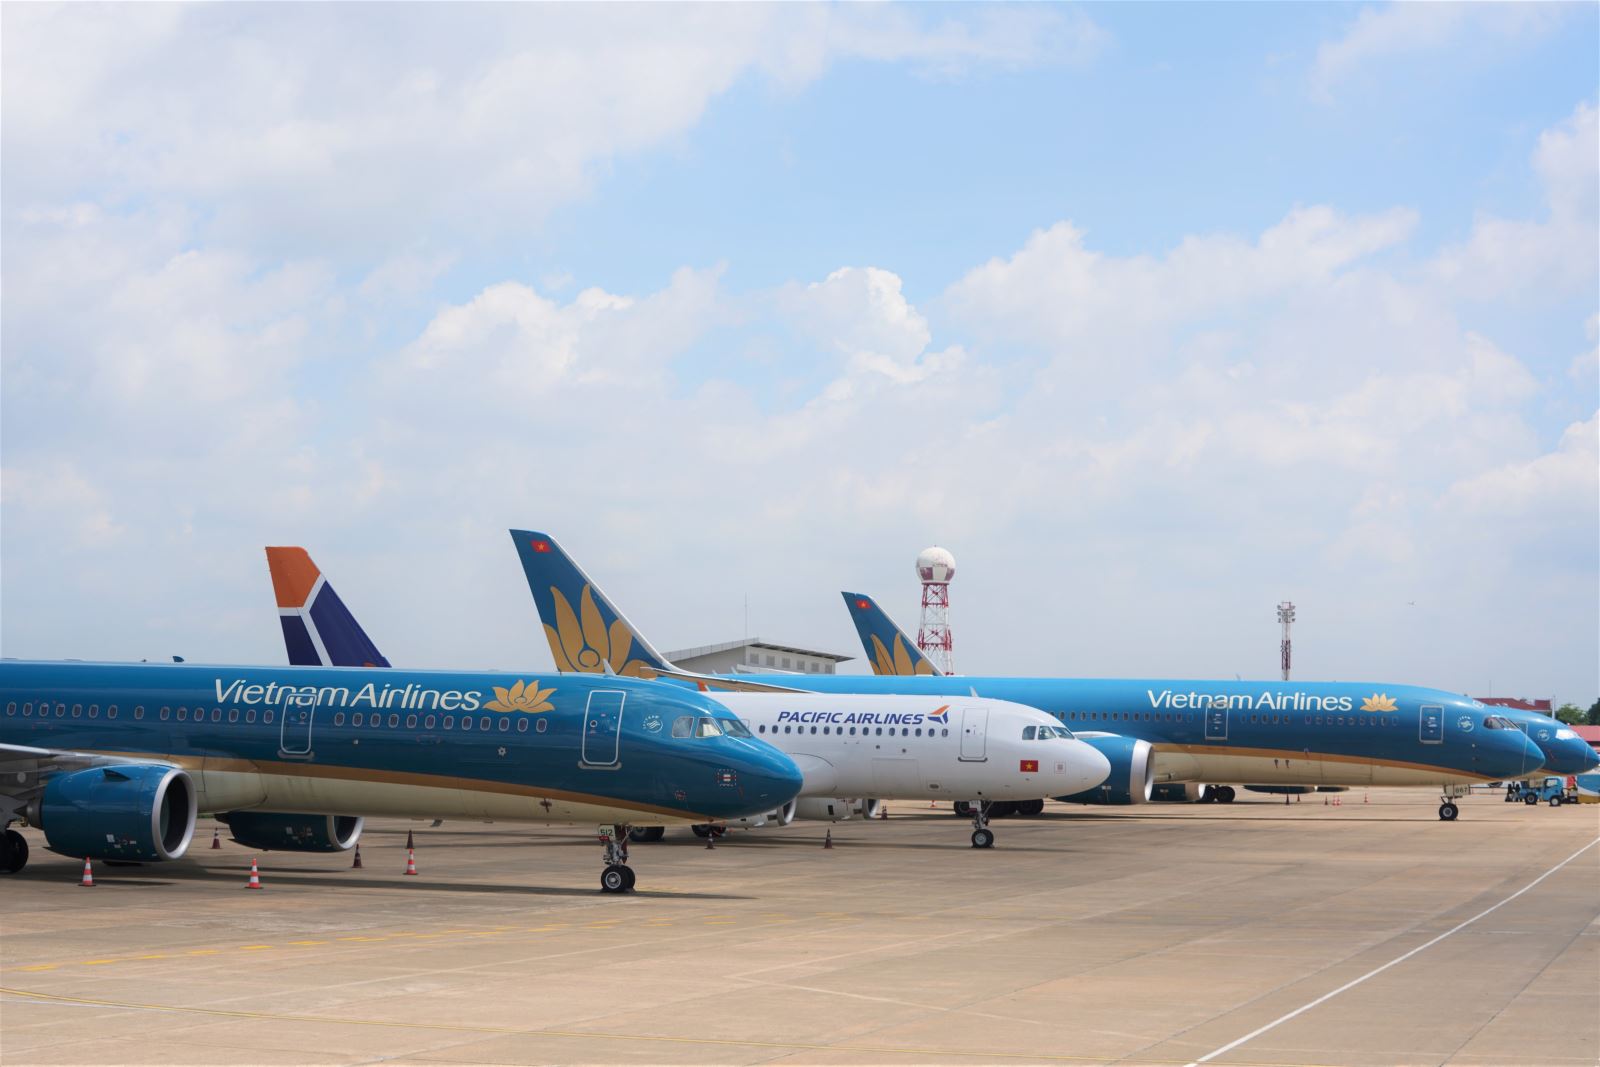  Mua vé máy bay Tết của các hãng hàng không qua kênh chính thức hạn chế vé giả.